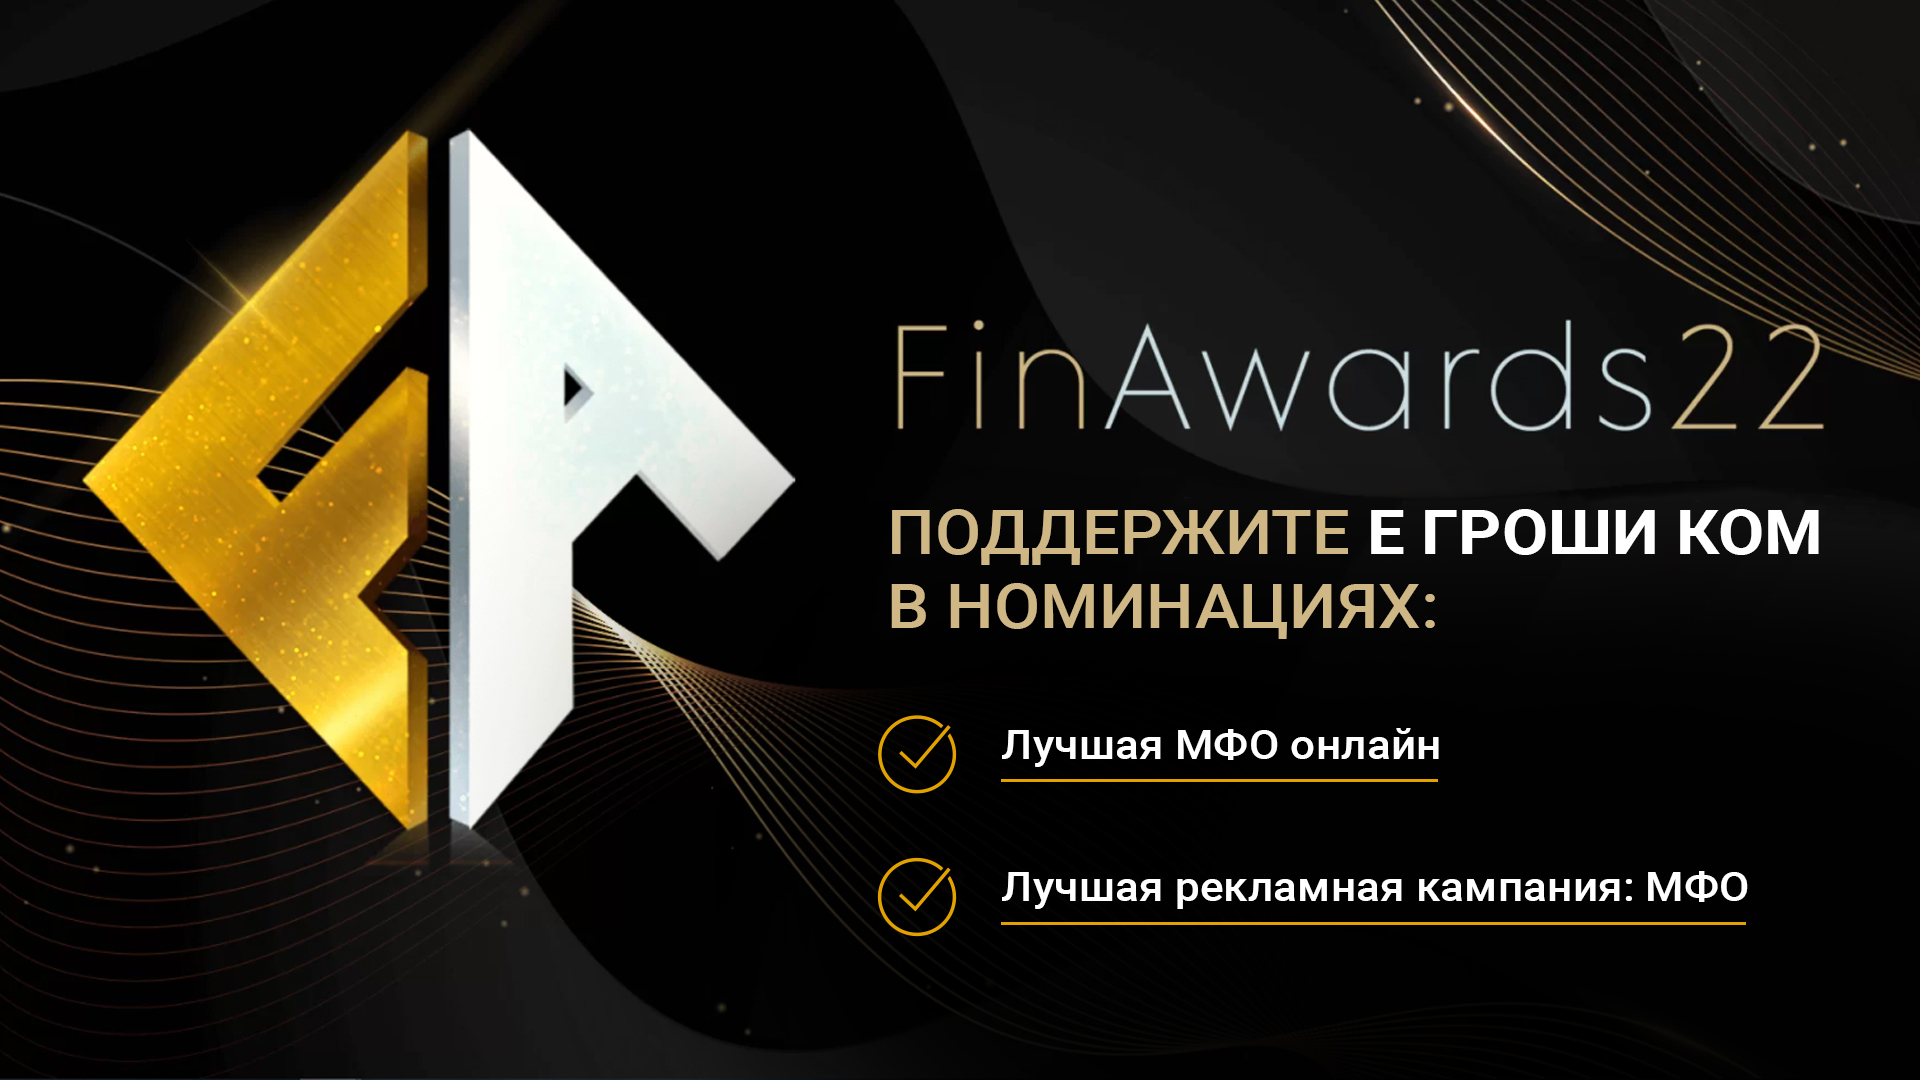 Выбирайте Е Гроши КОМ в номинациях FinAwards